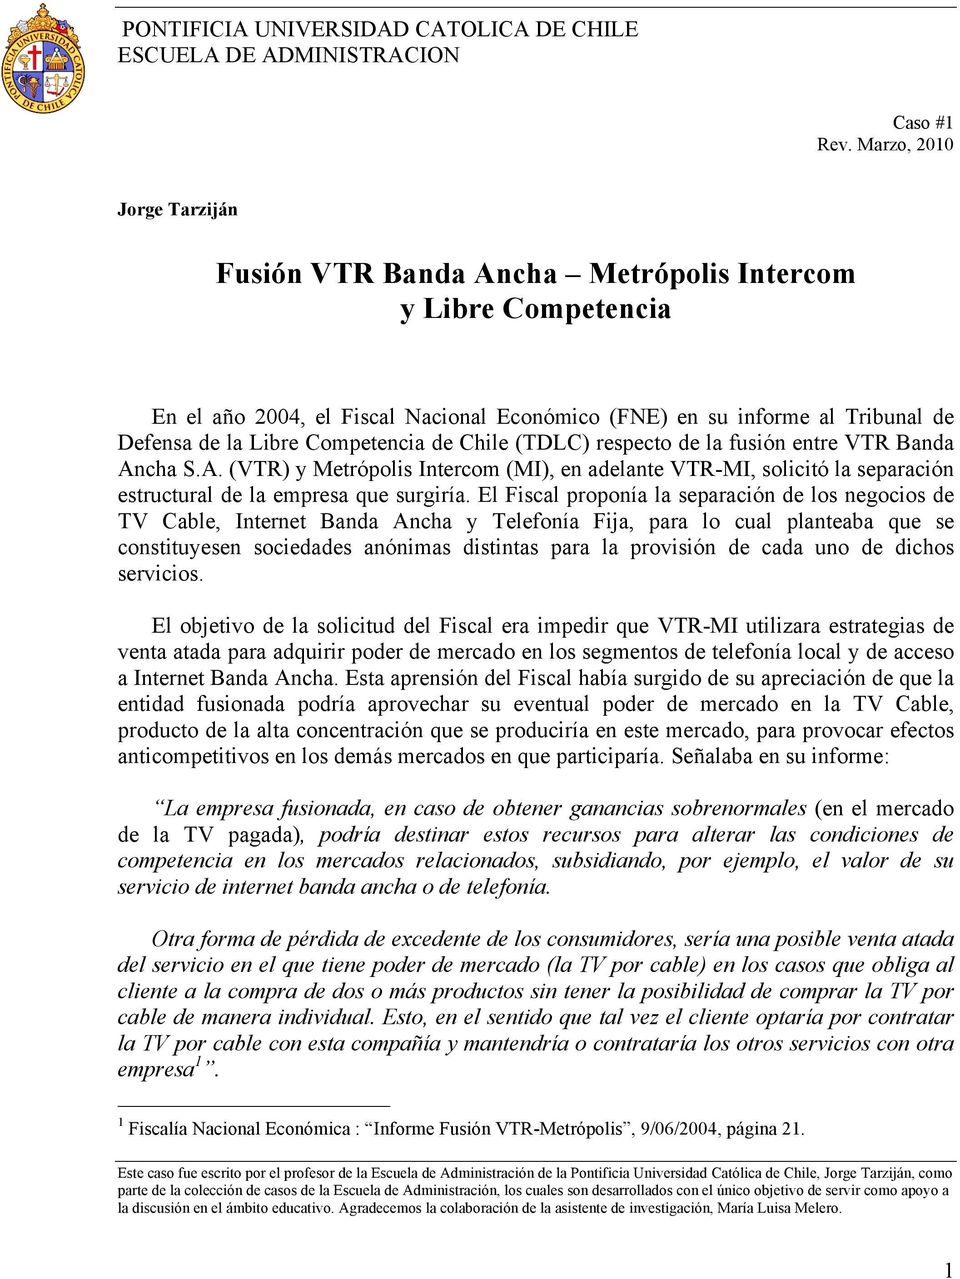 Competencia de Chile (TDLC) respecto de la fusión entre VTR Banda Ancha S.A. (VTR) y Metrópolis Intercom (MI), en adelante VTR-MI, solicitó la separación estructural de la empresa que surgiría.